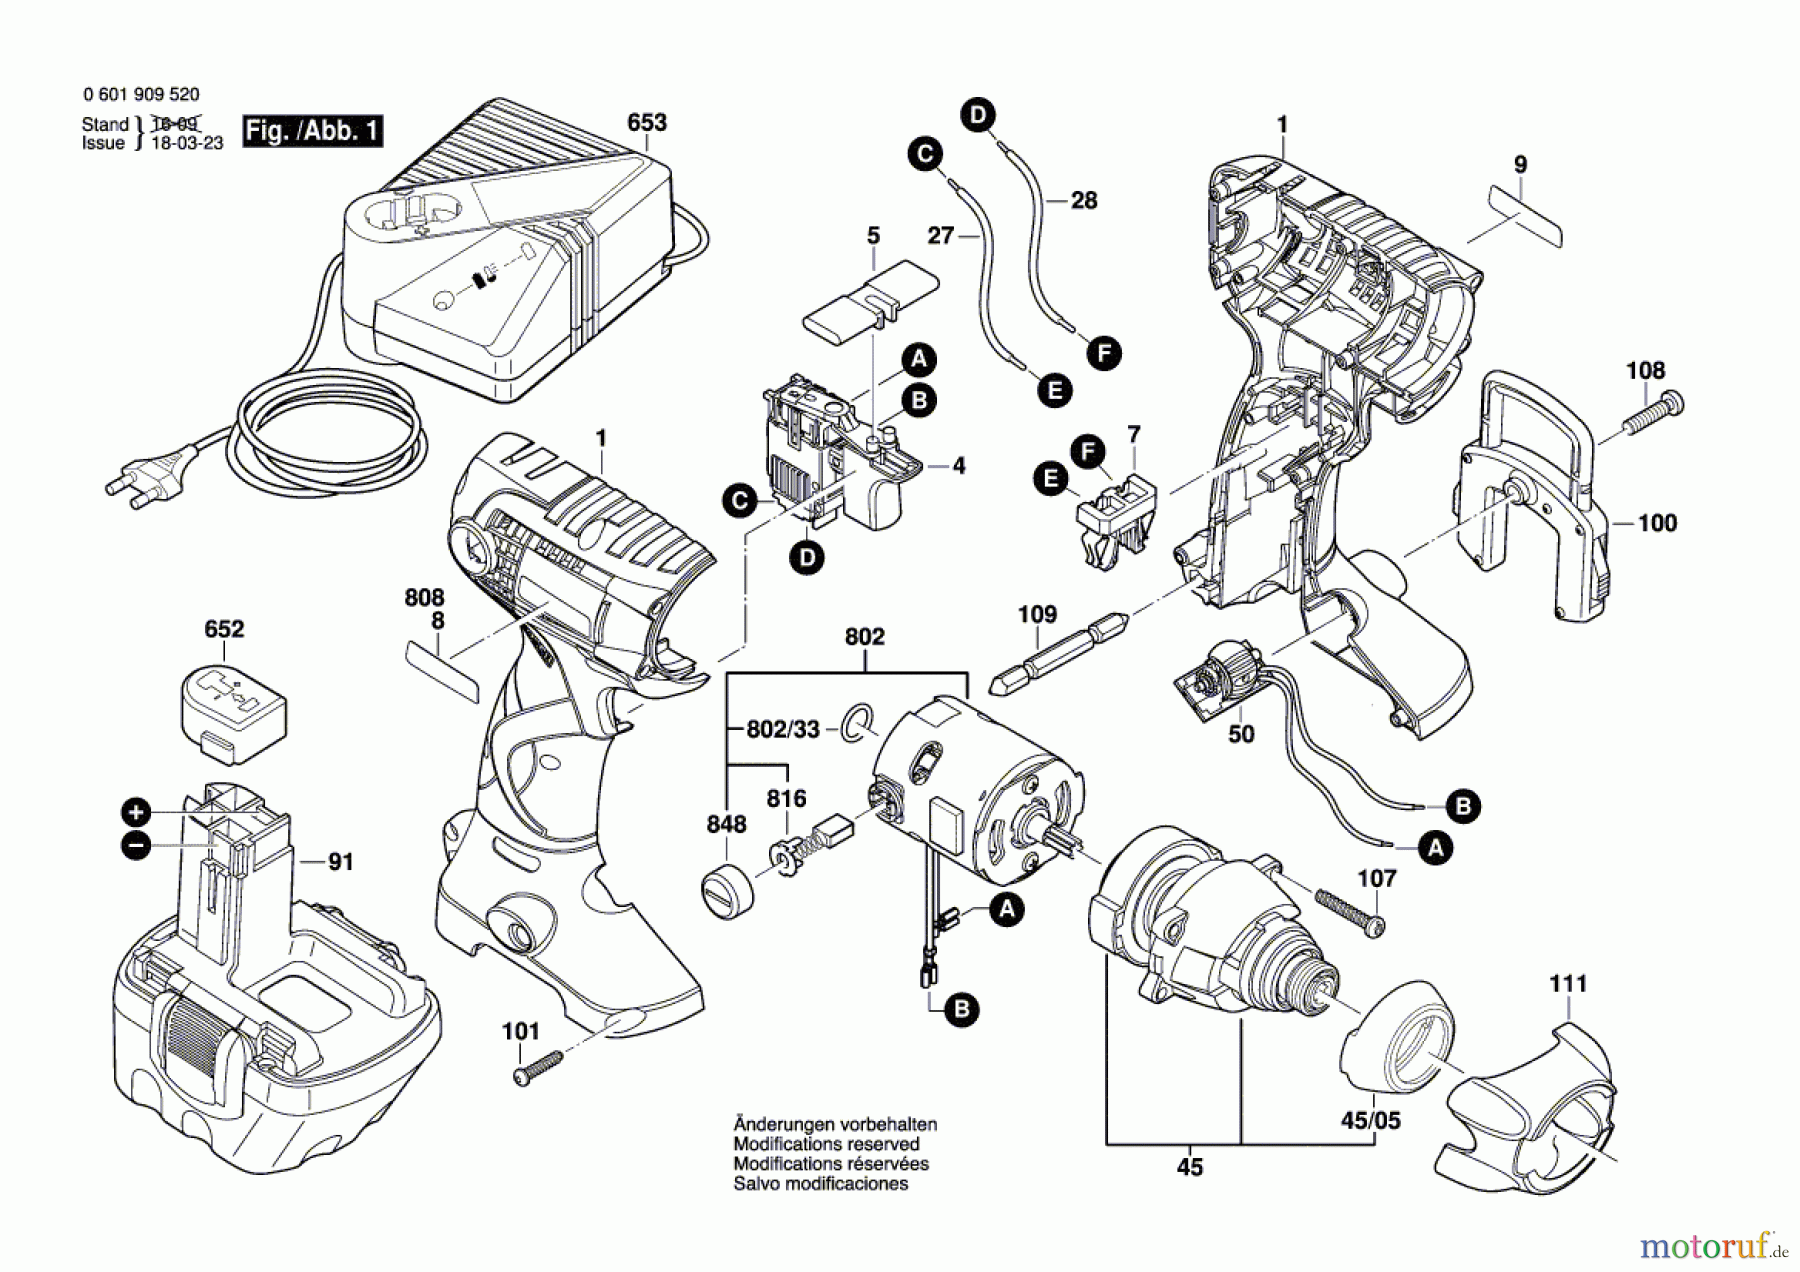  Bosch Werkzeug Schlagschrauber GDR 12 V Seite 1